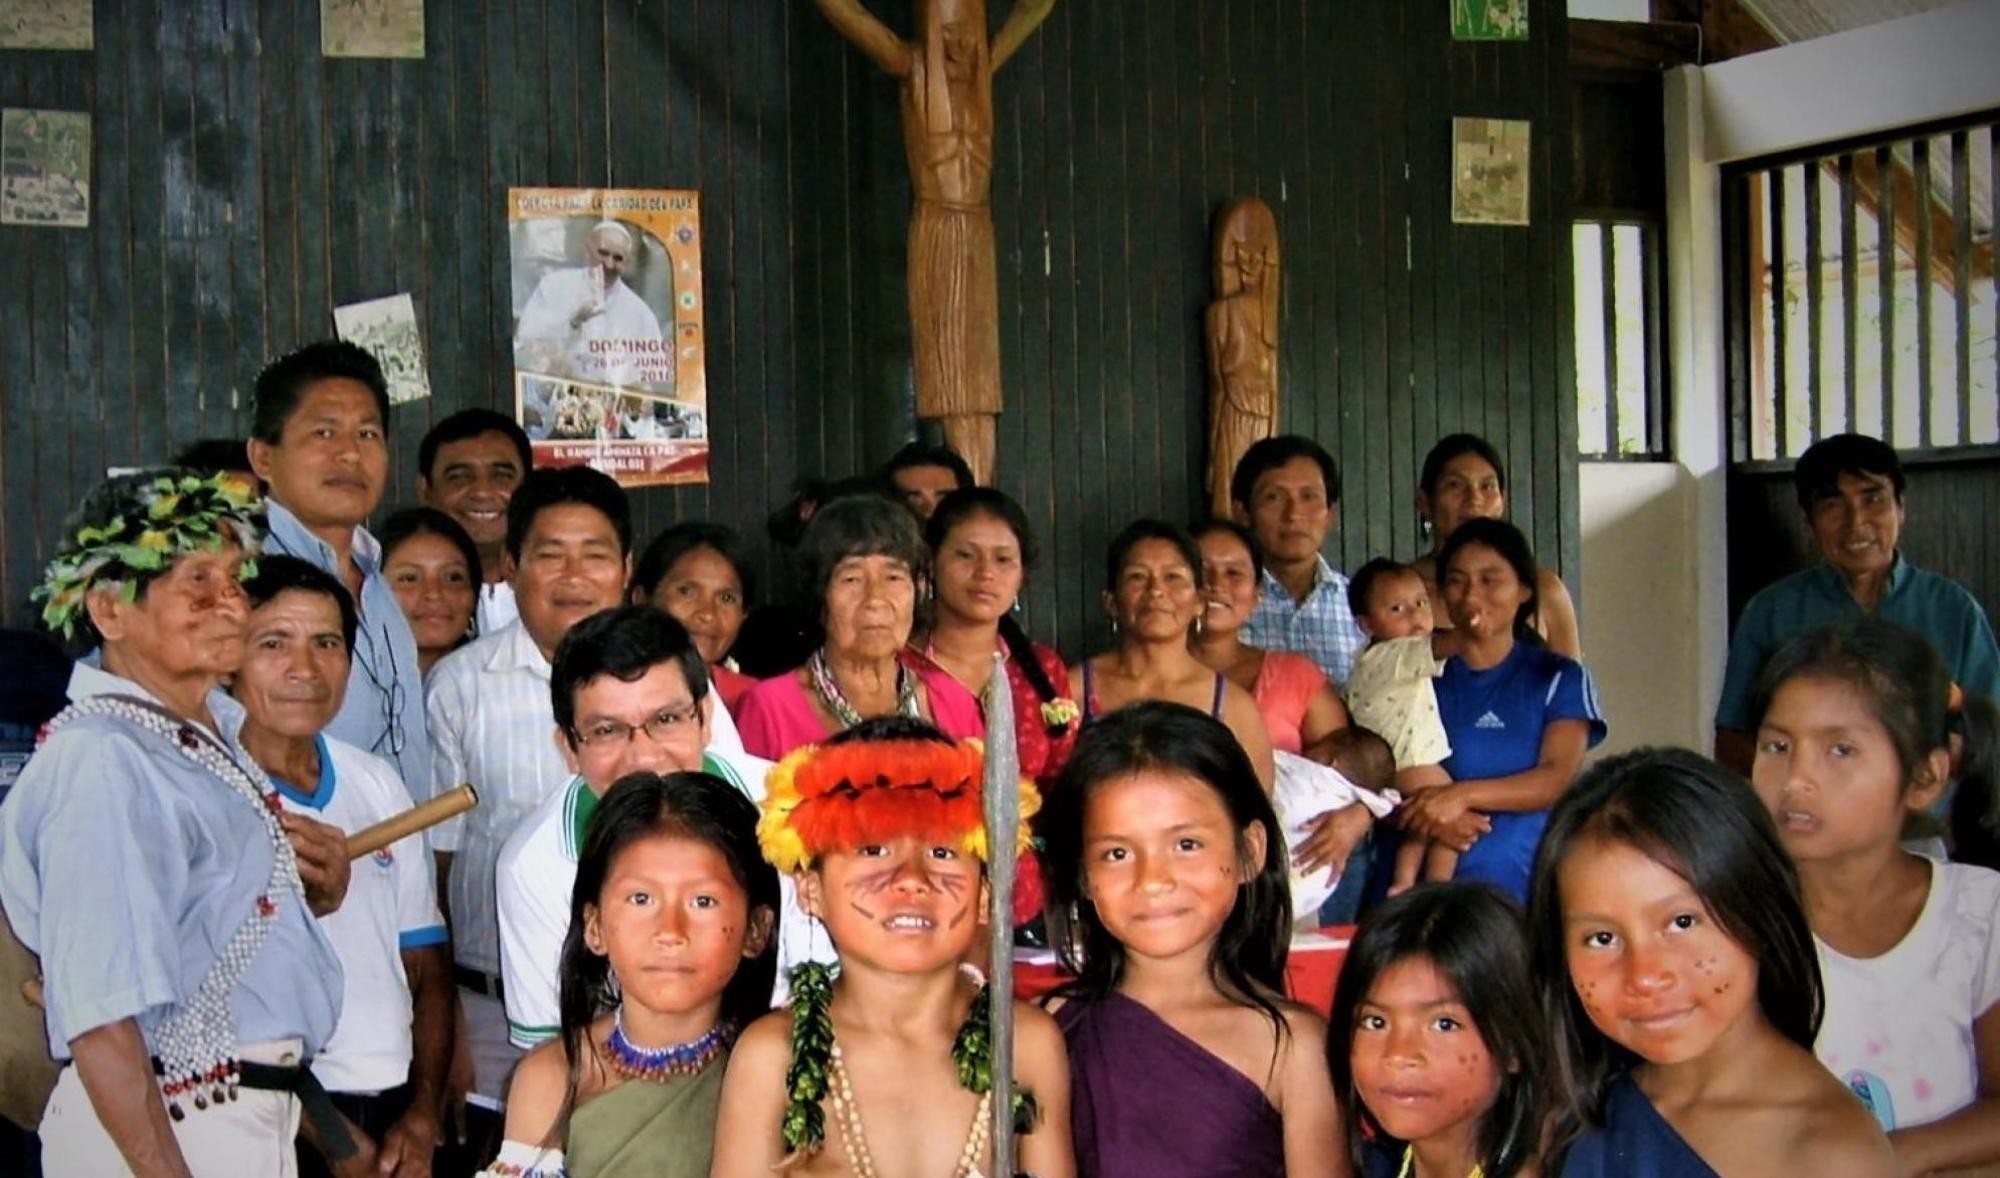 An indigenous community assembles